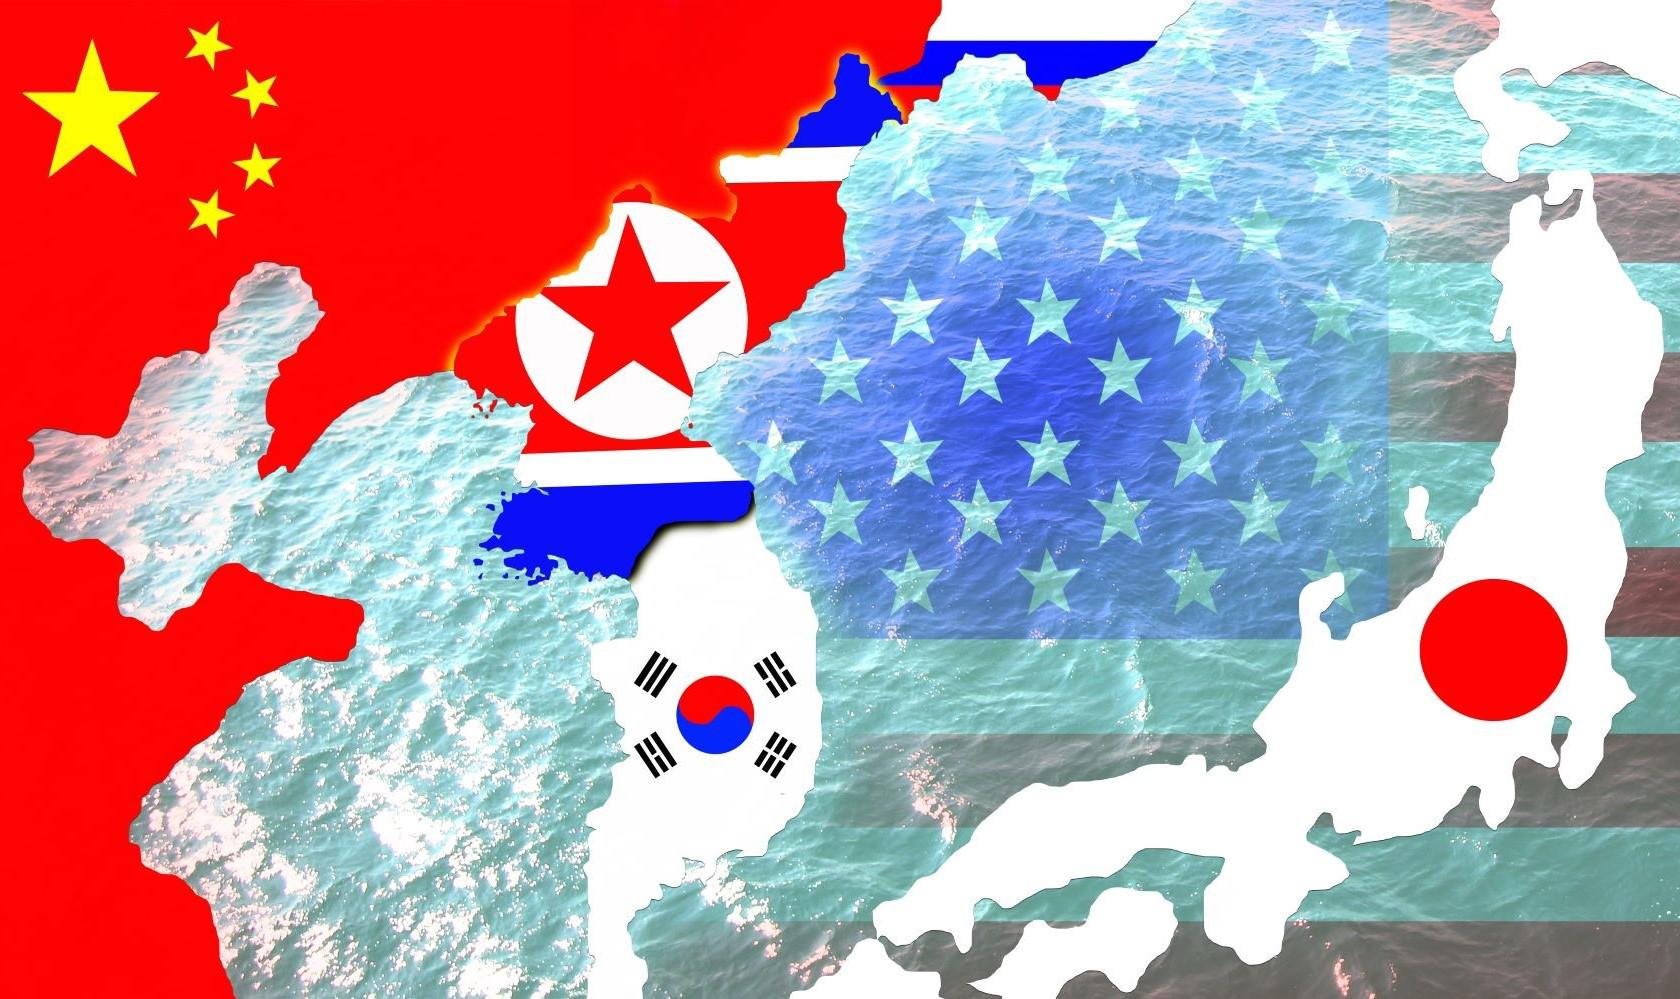 South japan. Флаг корейского полуострова. Корейский полуостров Южная и Северная Корея. Флаг Северной Кореи и Южной Кореи. Северная и Южная Корея на карте.